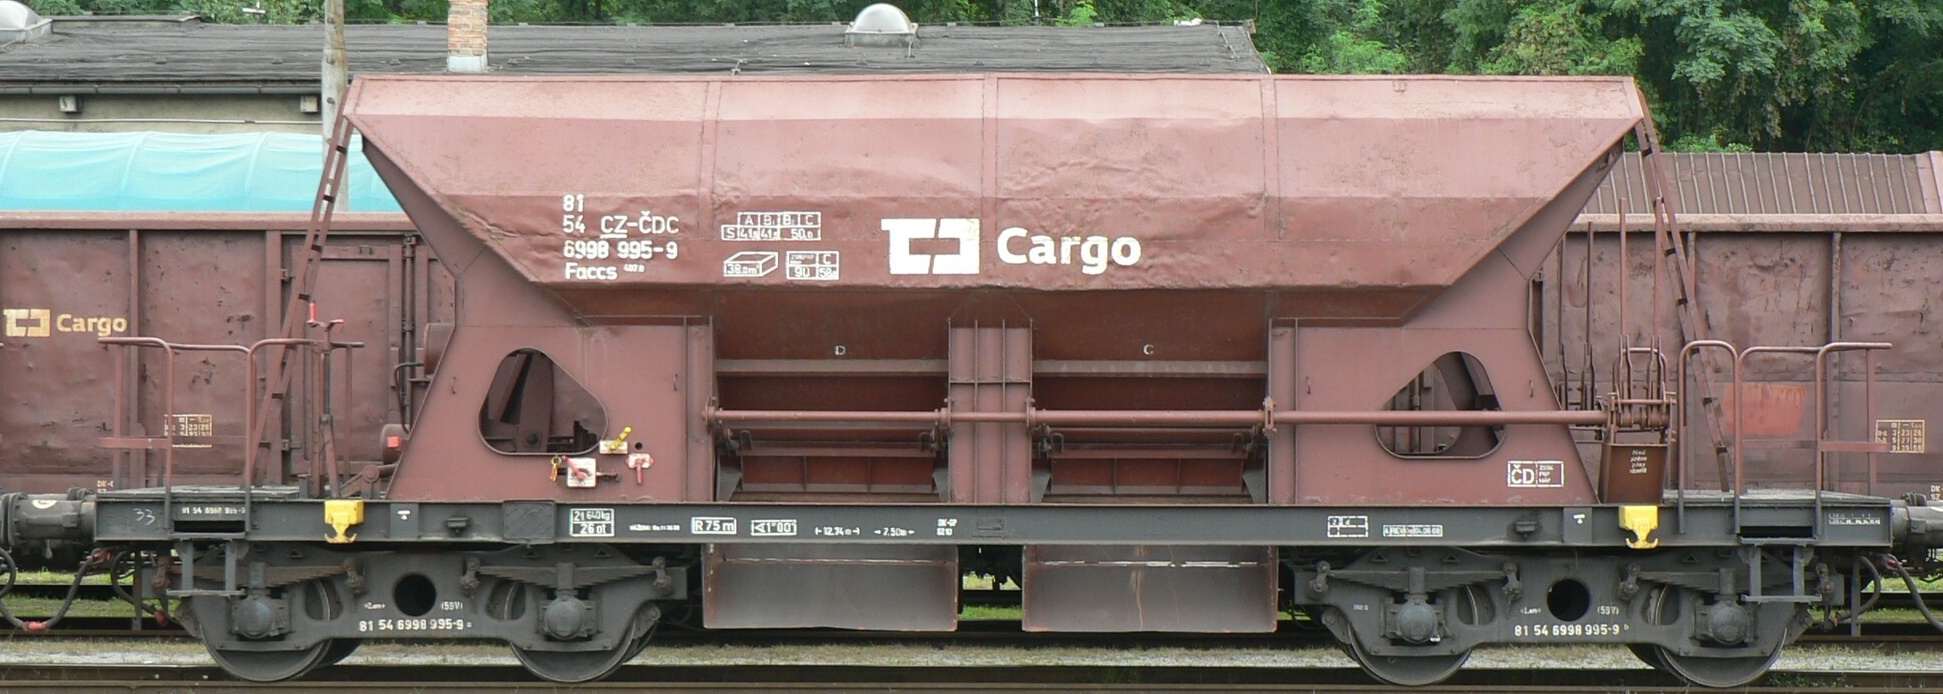 Facs ČD Cargo - 7. předloha, zvětšit